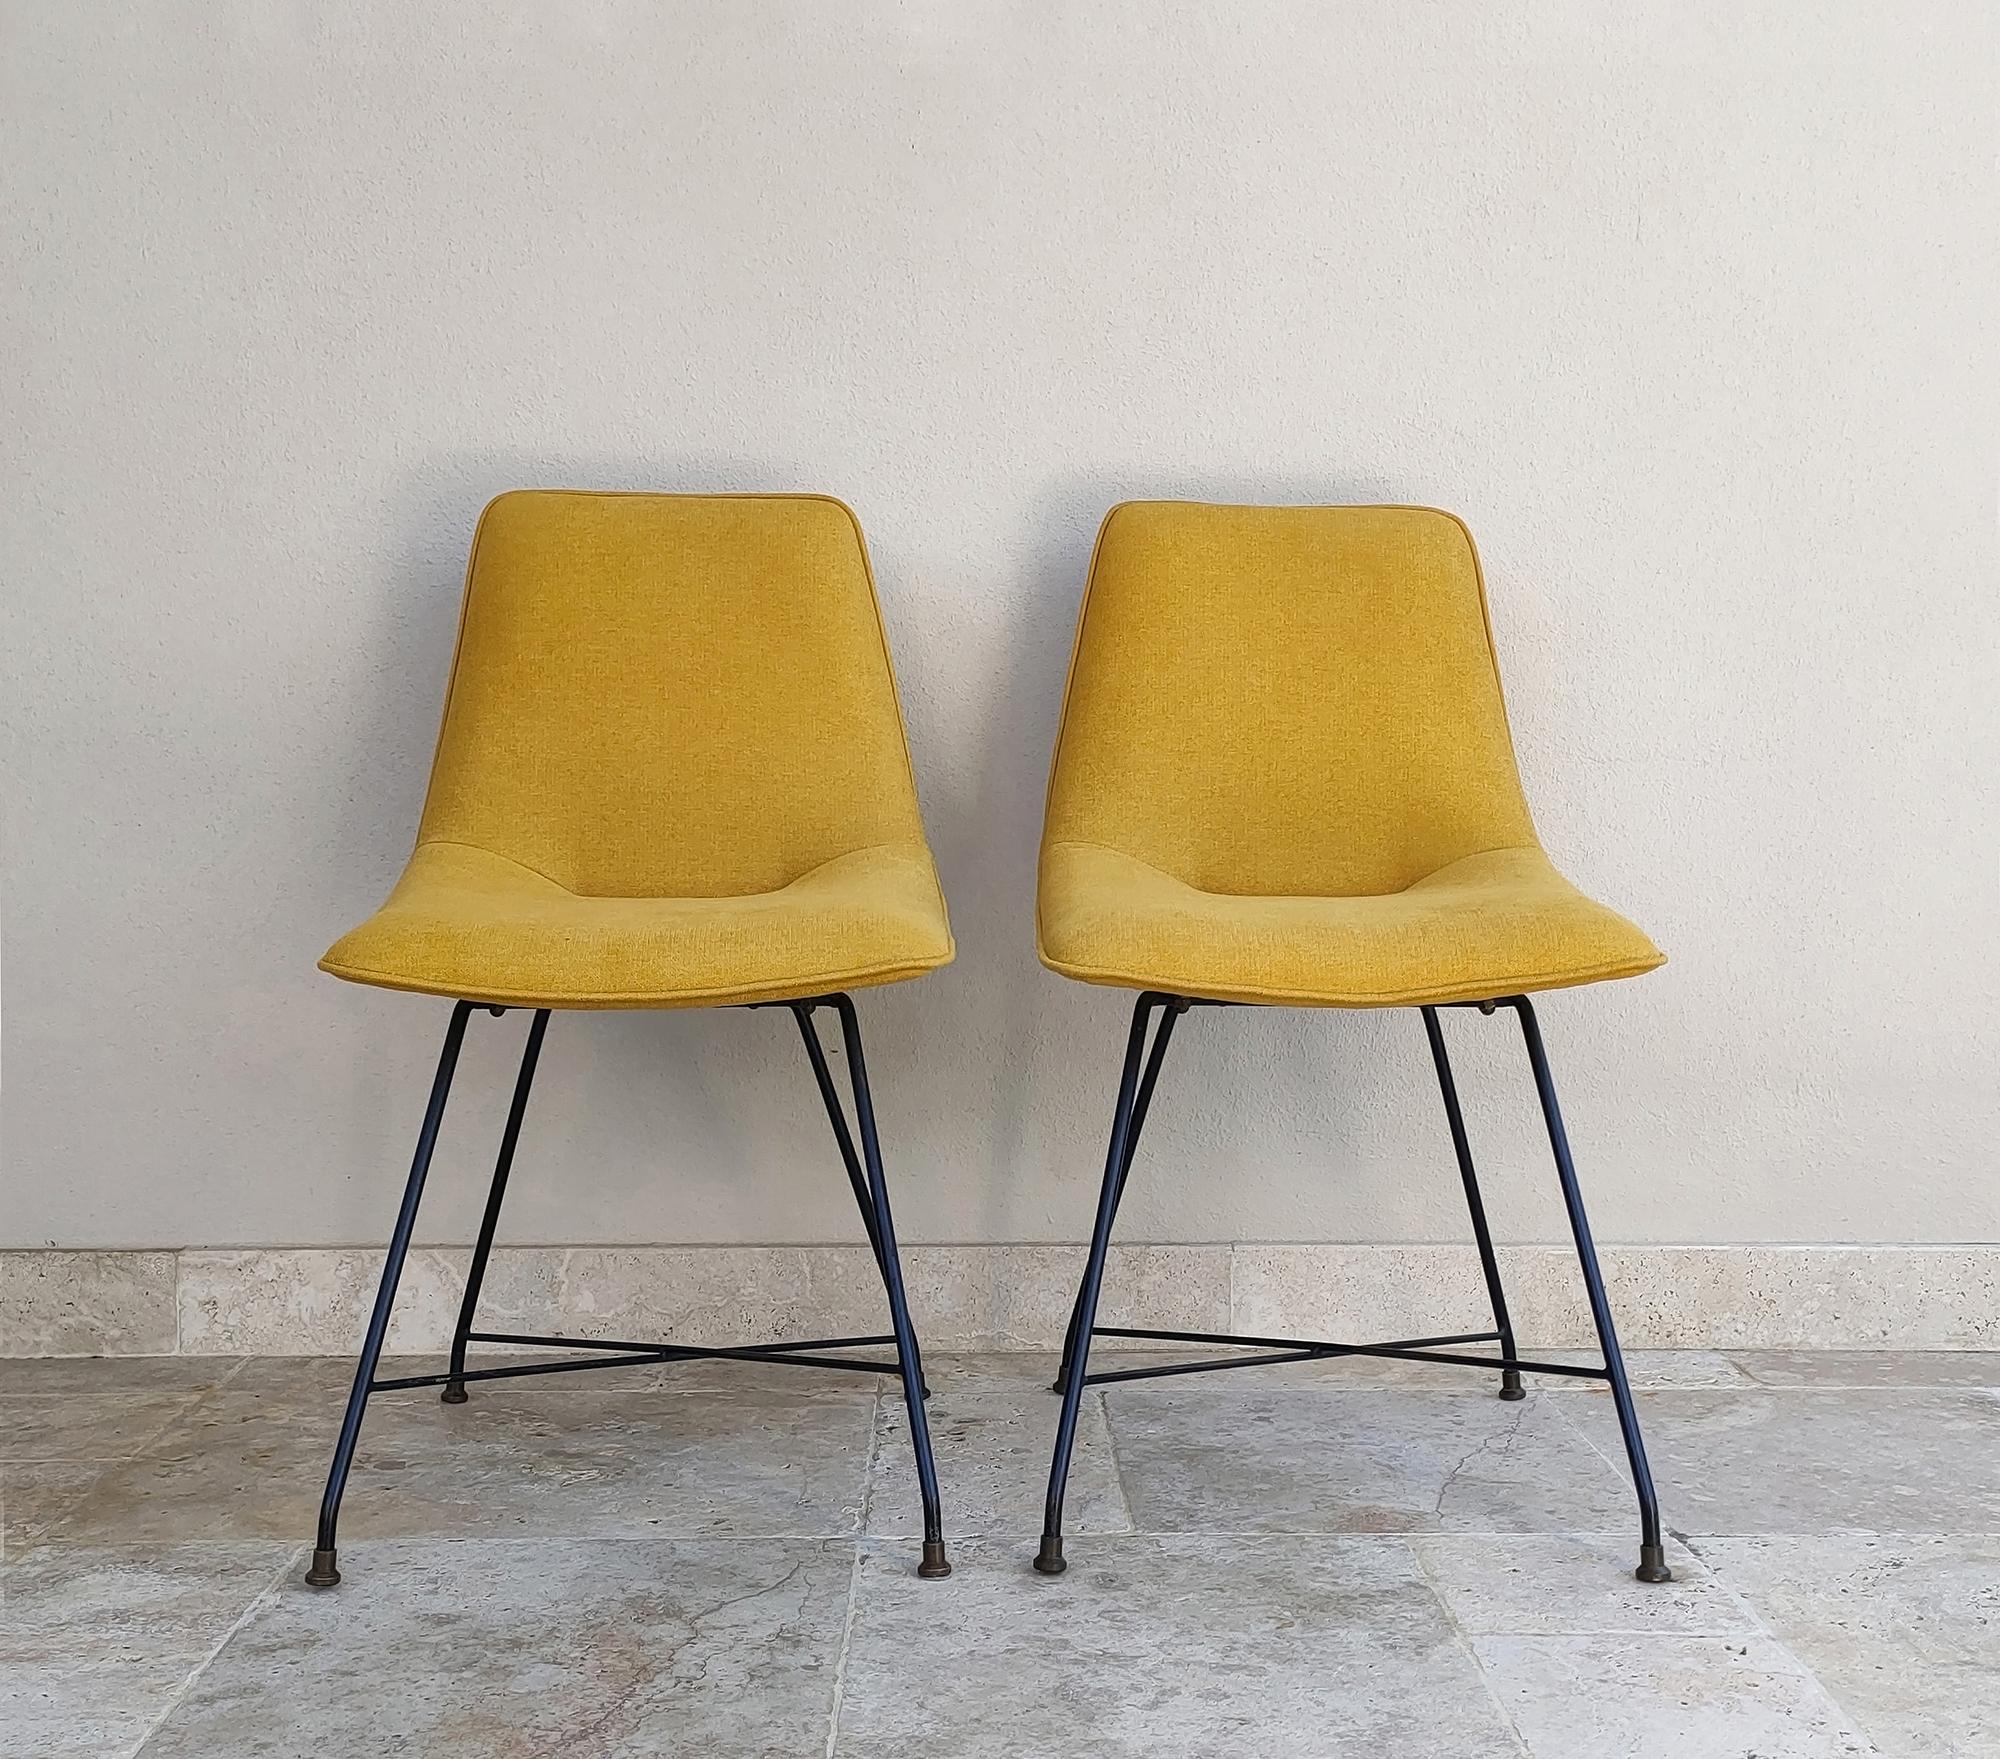 Ensemble de deux chaises Aster conçues par Augusto Bozzi dans les années 1950 et fabriquées par Fratelli Saporiti.
La caractéristique principale des chaises est la structure métallique iconique et élégante des pieds, typique du design d'Augusto